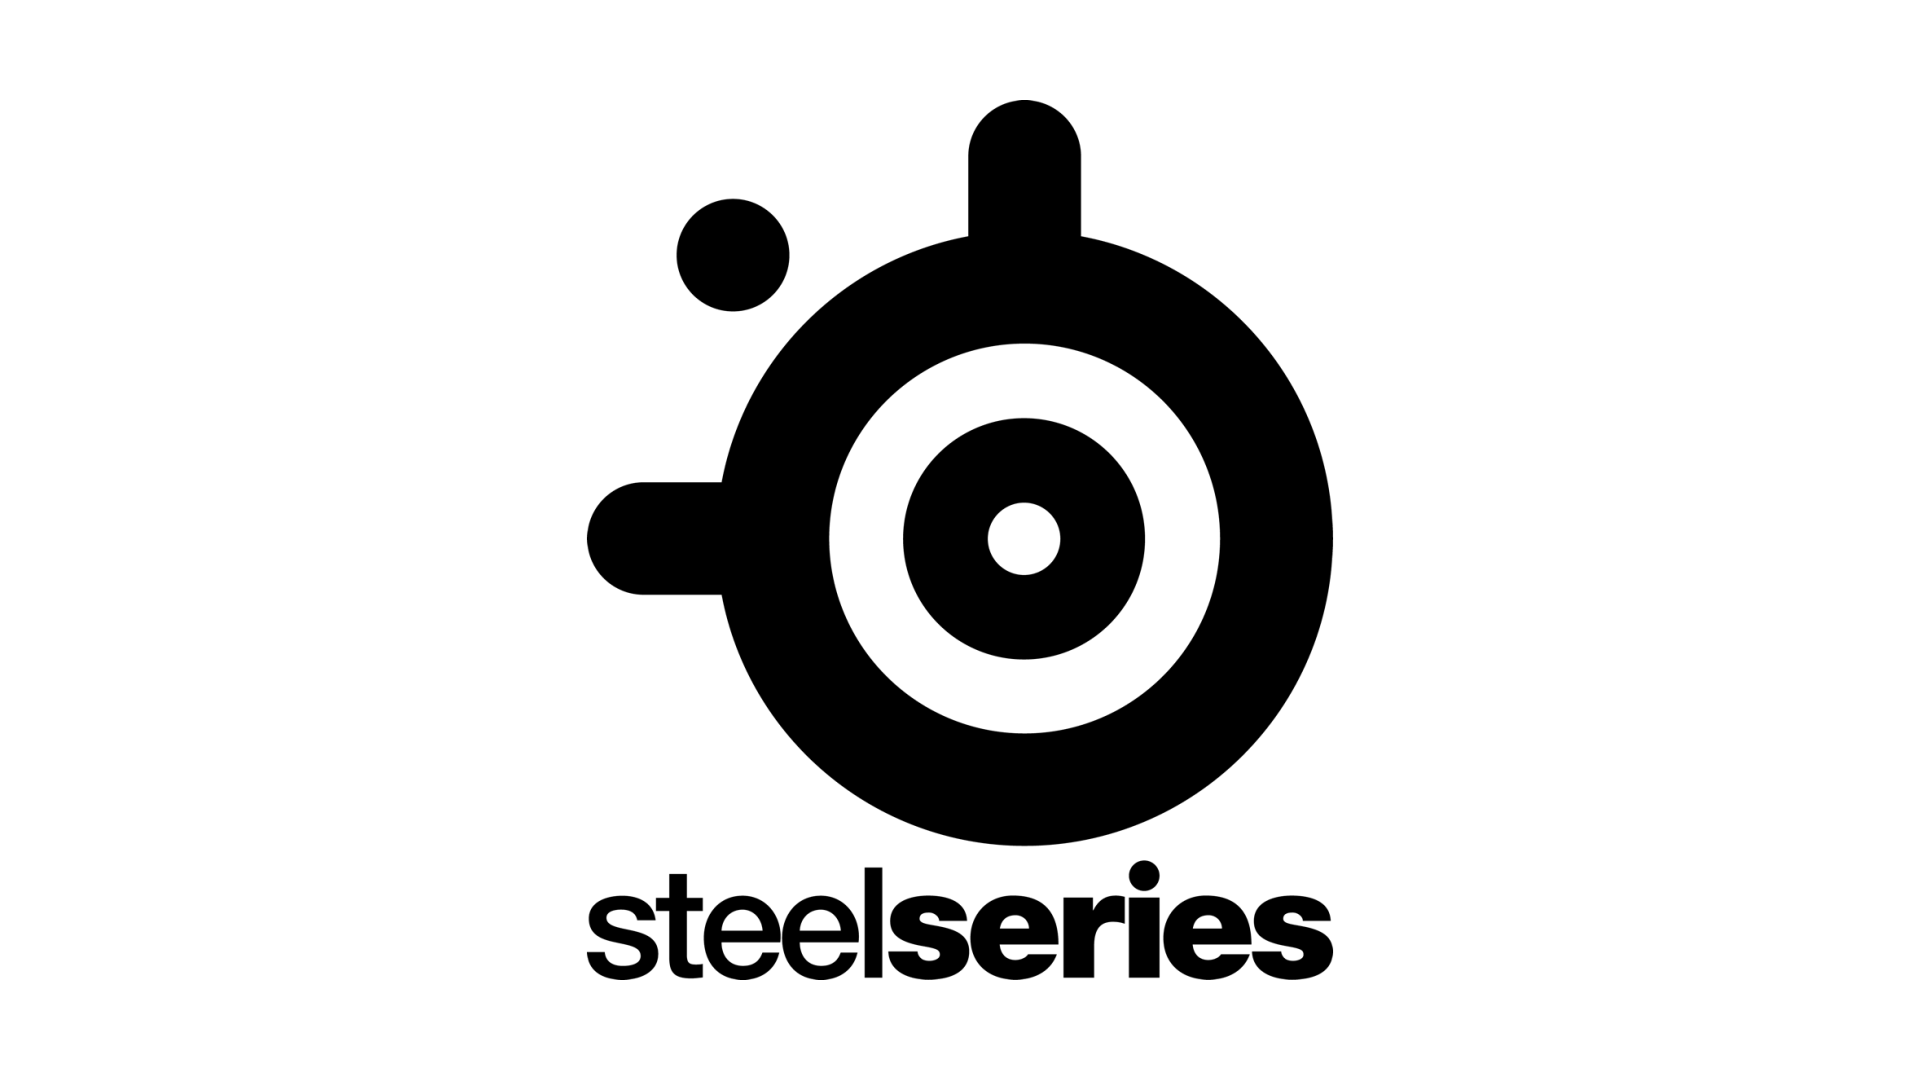 Steelseries Logos